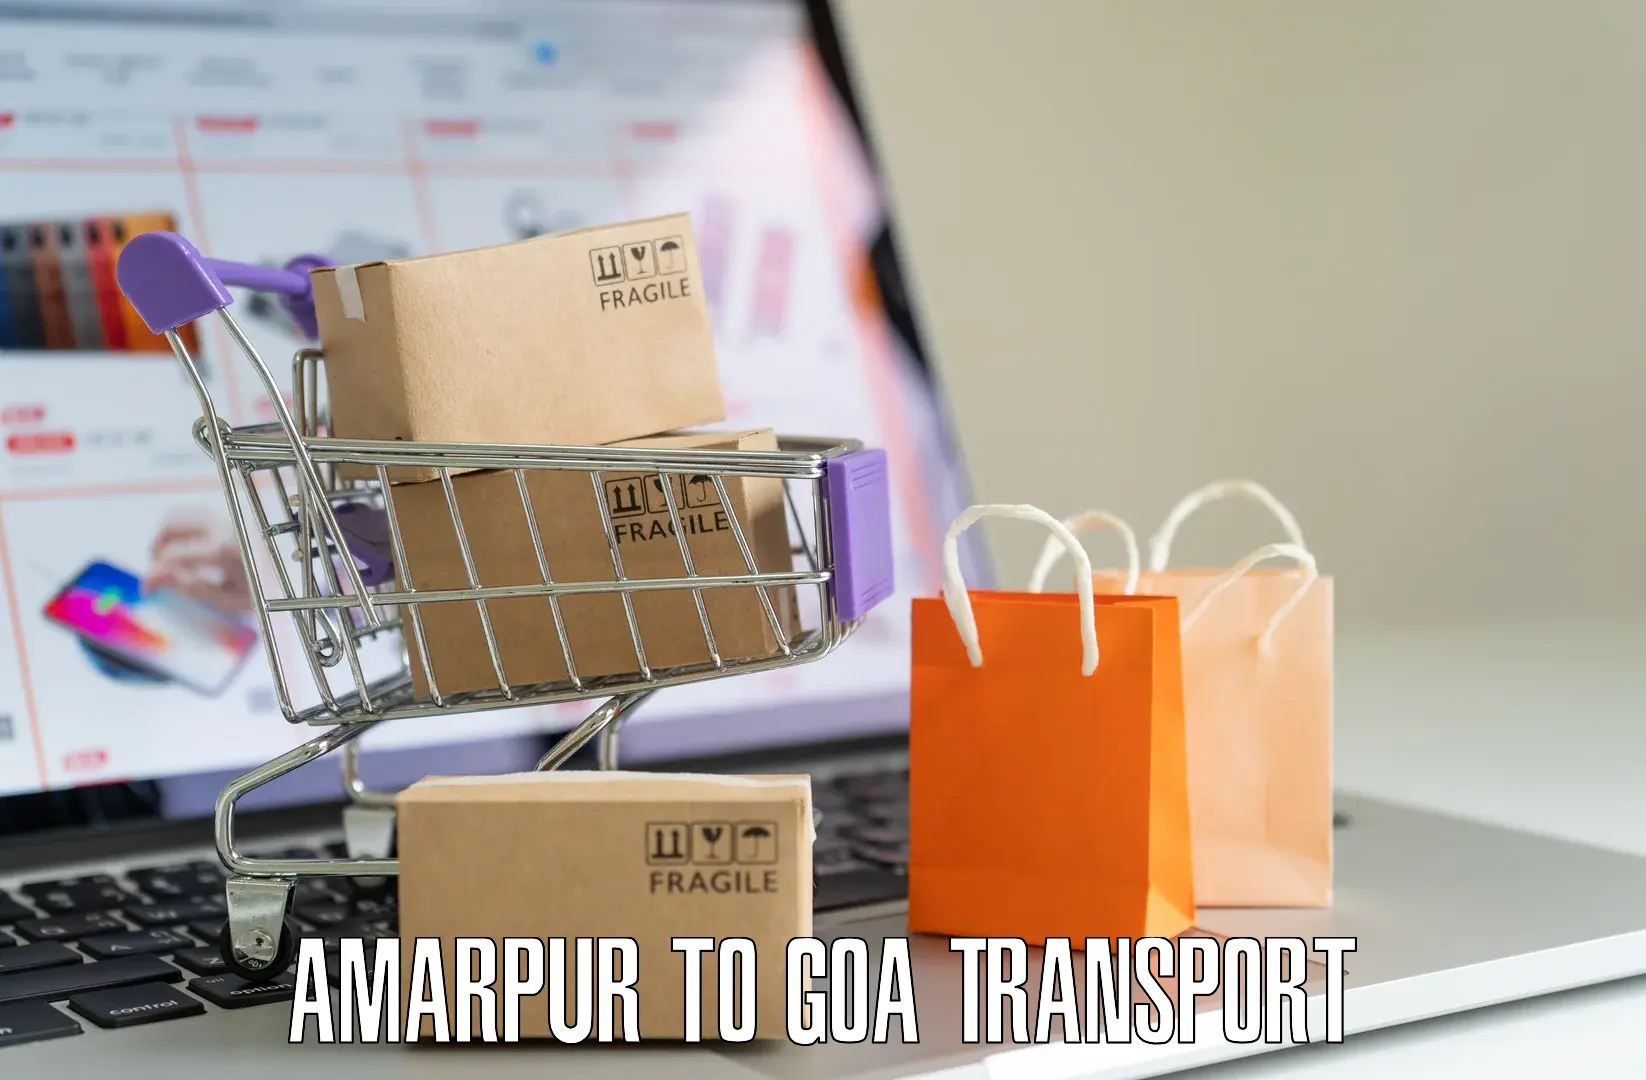 Parcel transport services Amarpur to Bardez